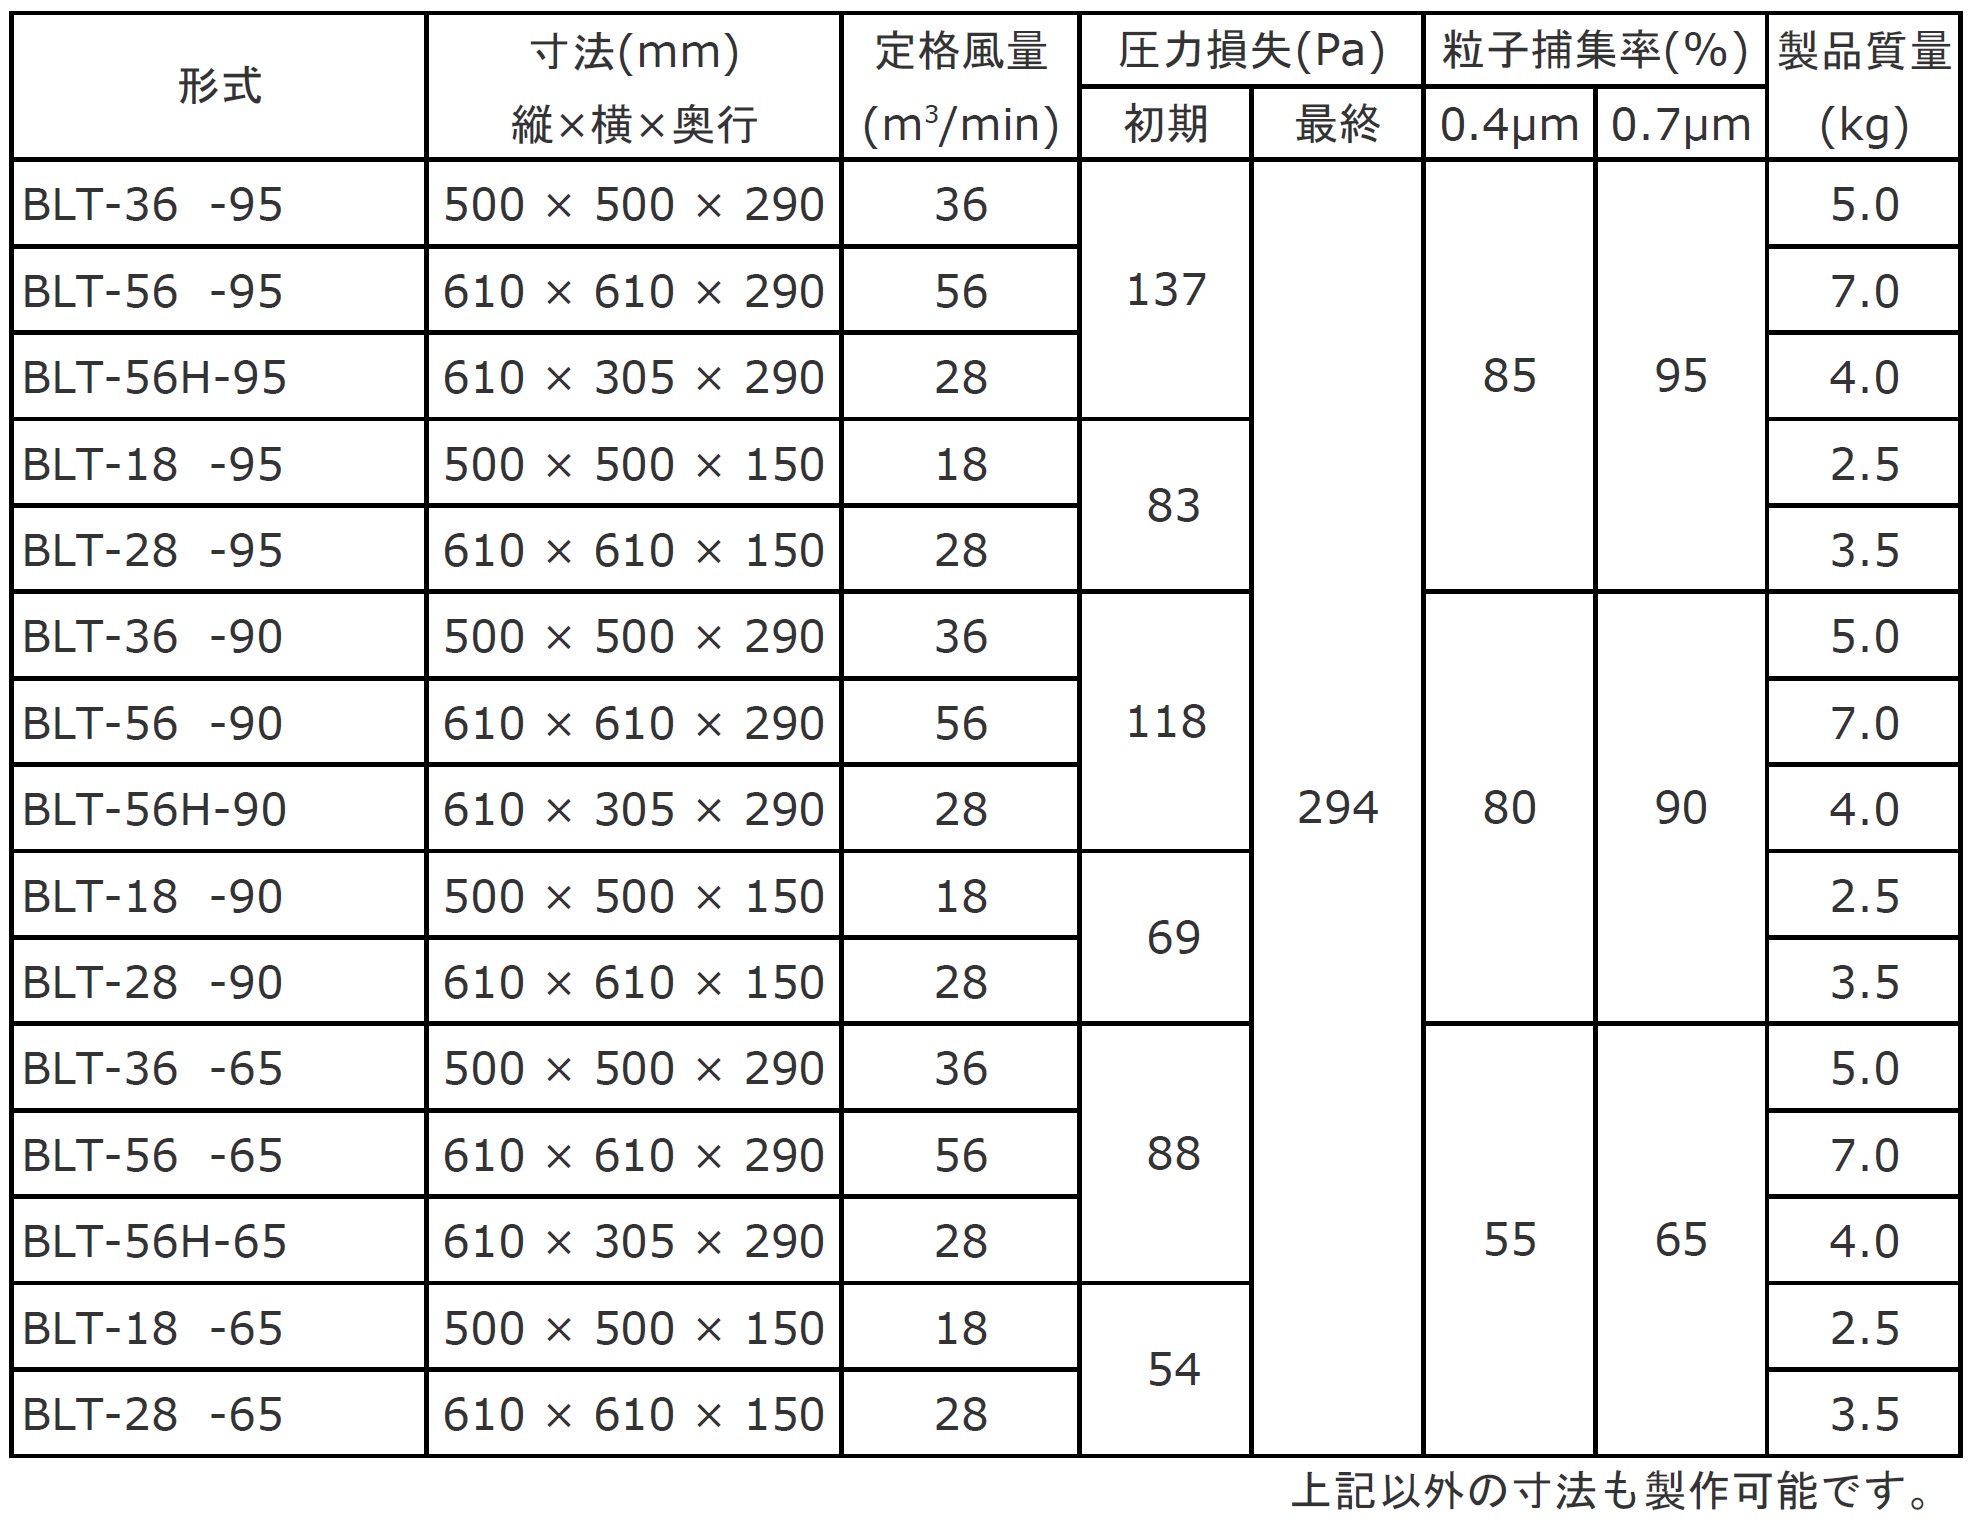 メーカー 日本無機 ビルトロンフィルタ 610×610×150 日本無機（株） (BLT-28-65) (353-2666) タツマックスメガ